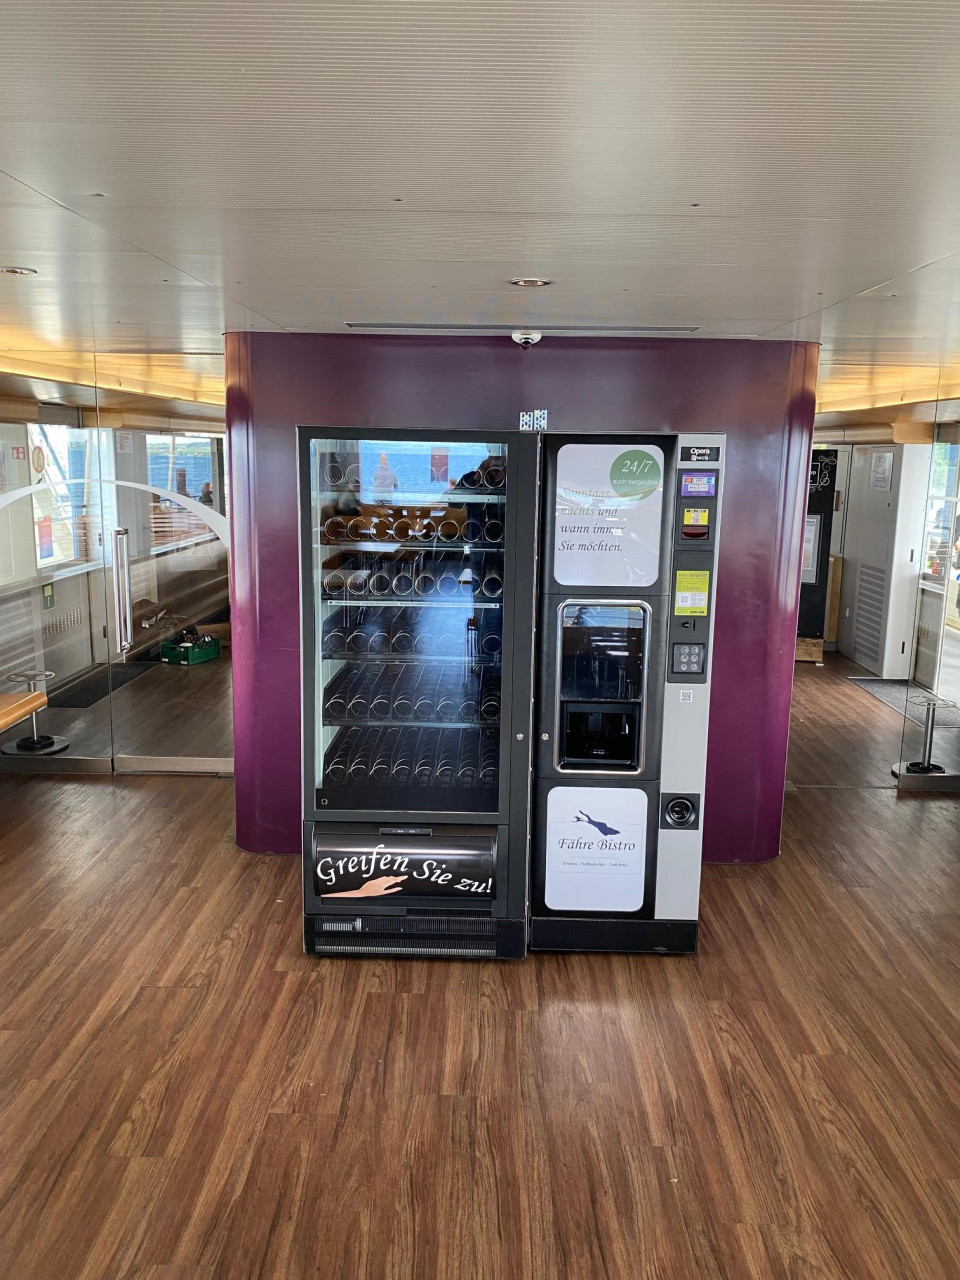 Flavura Automaten: Vending Automaten, Verkaufsautomaten, Warenautomaten, Foodautomaten, Snackautomaten, Verpflegungsautomaten